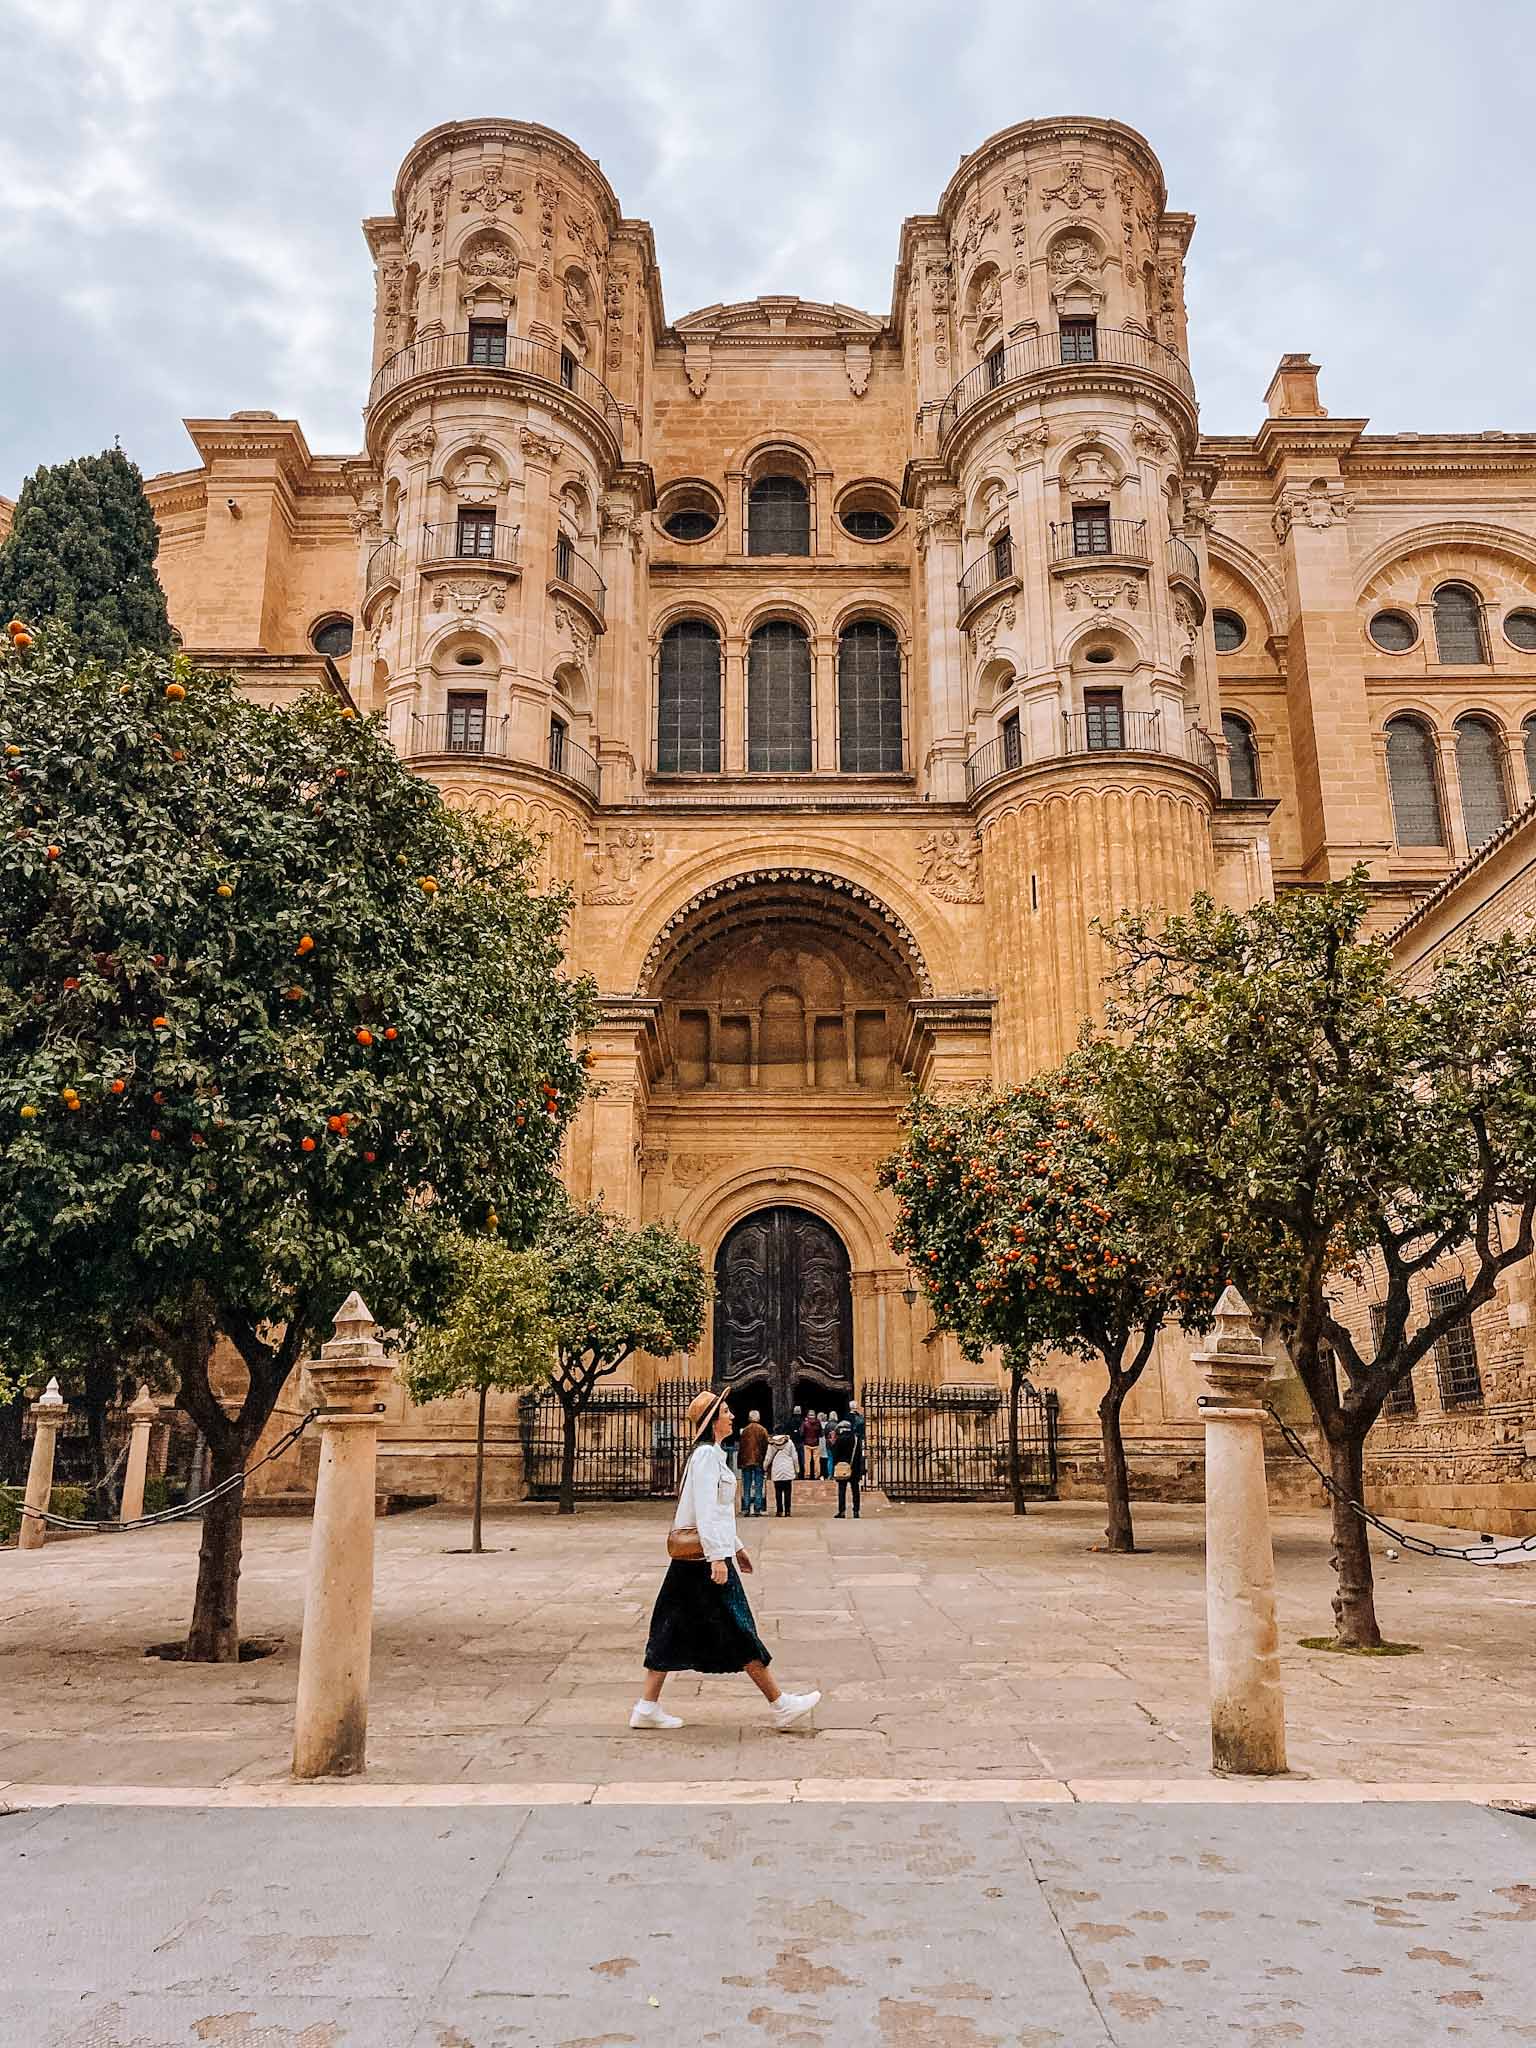 Best Instagram spots in Malaga, Spain